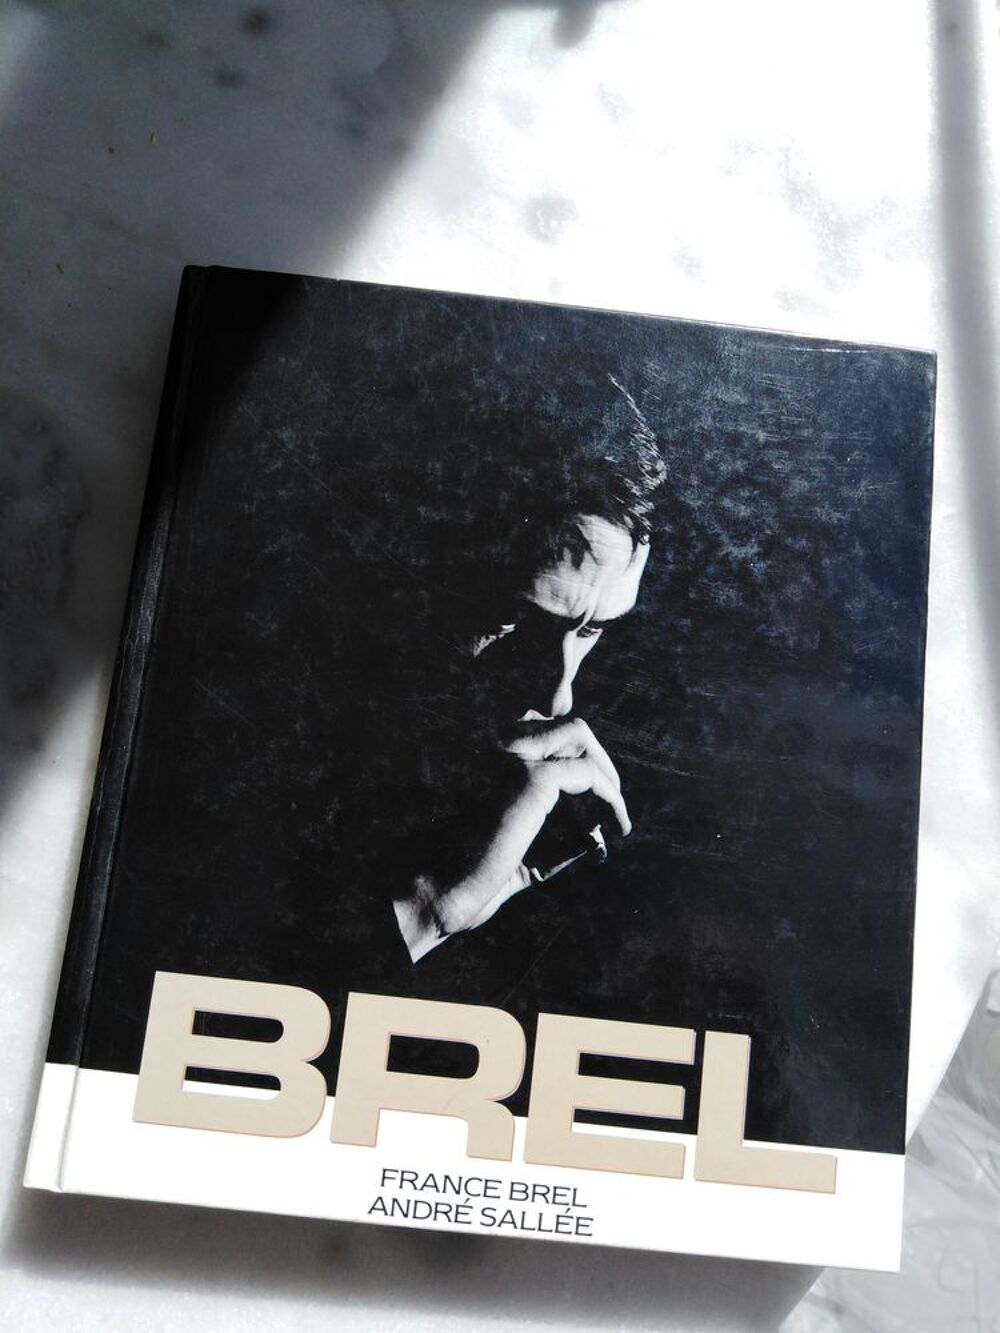 JACQUES BREL par FRANCE BREL et ANDRE SALLEE
Livres et BD